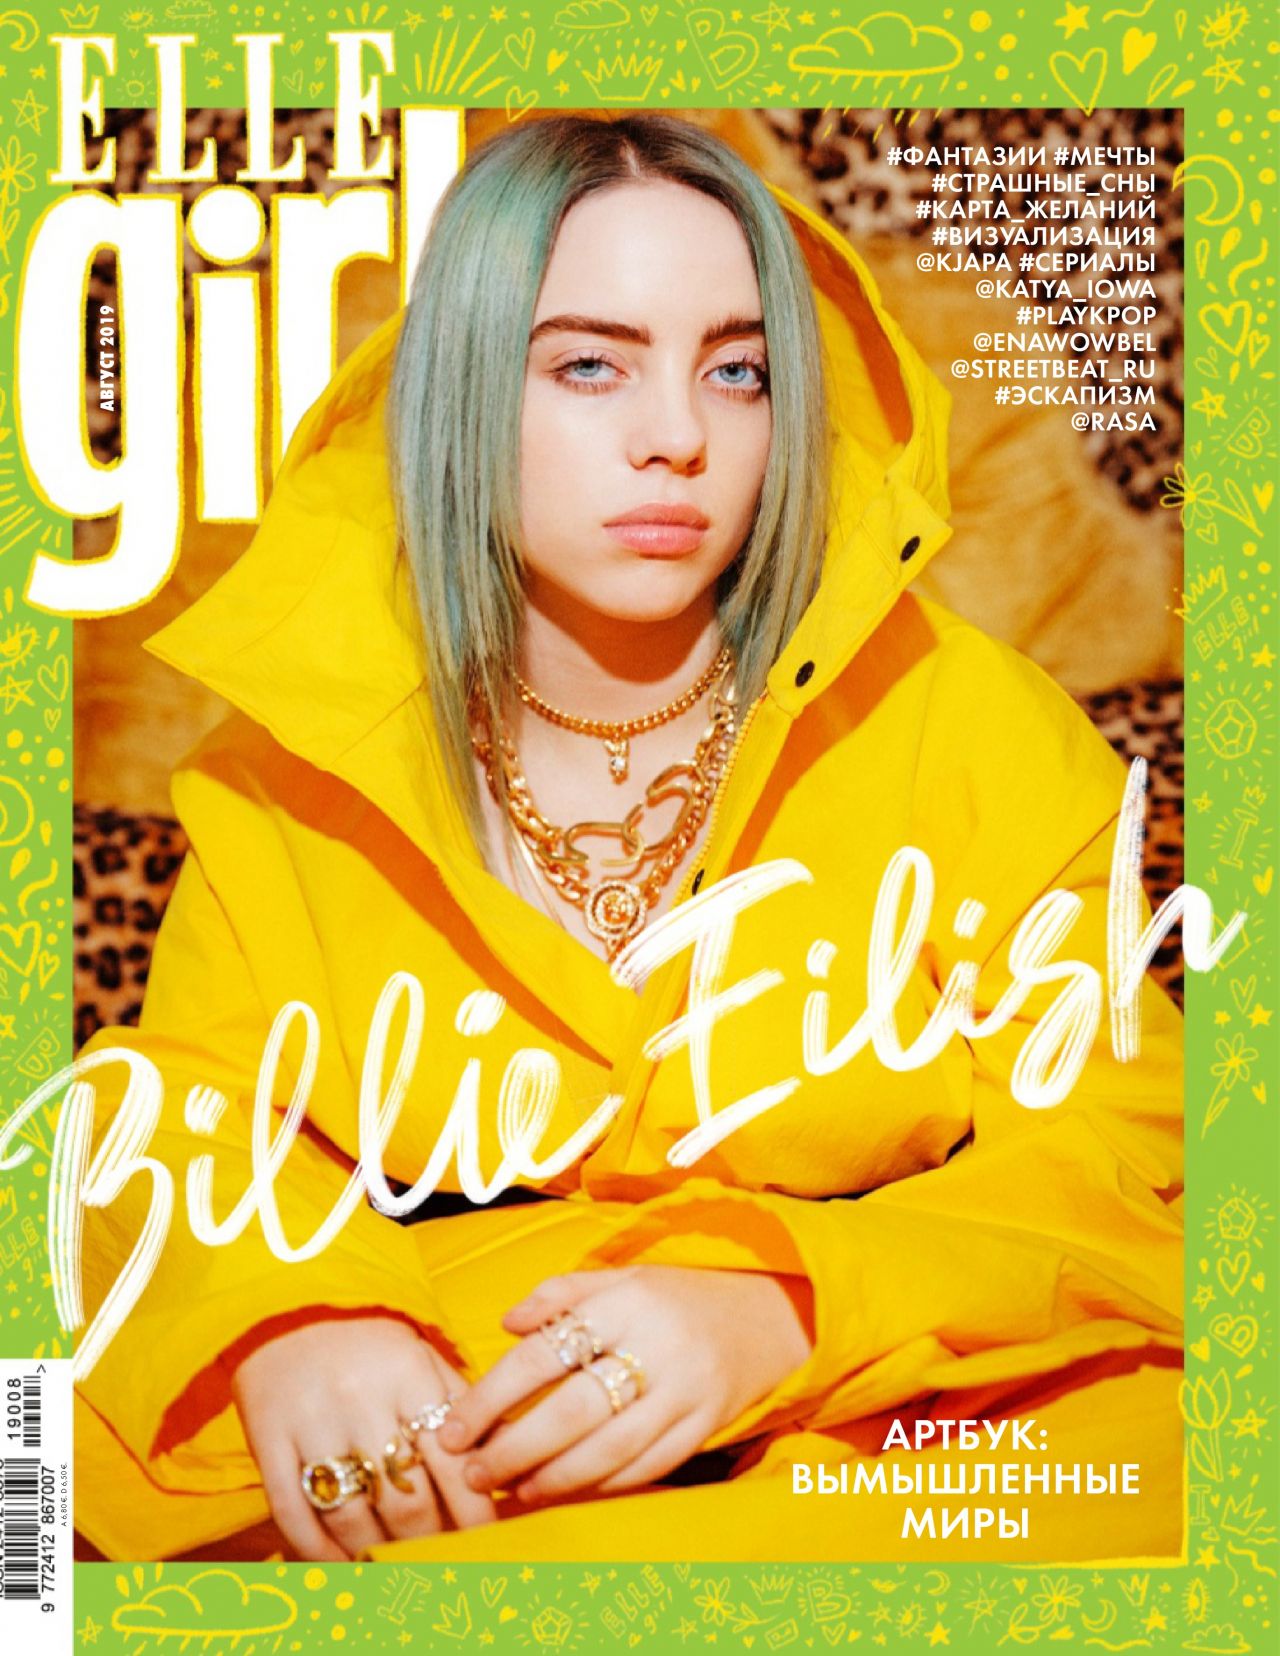 Billie Eilish Girl